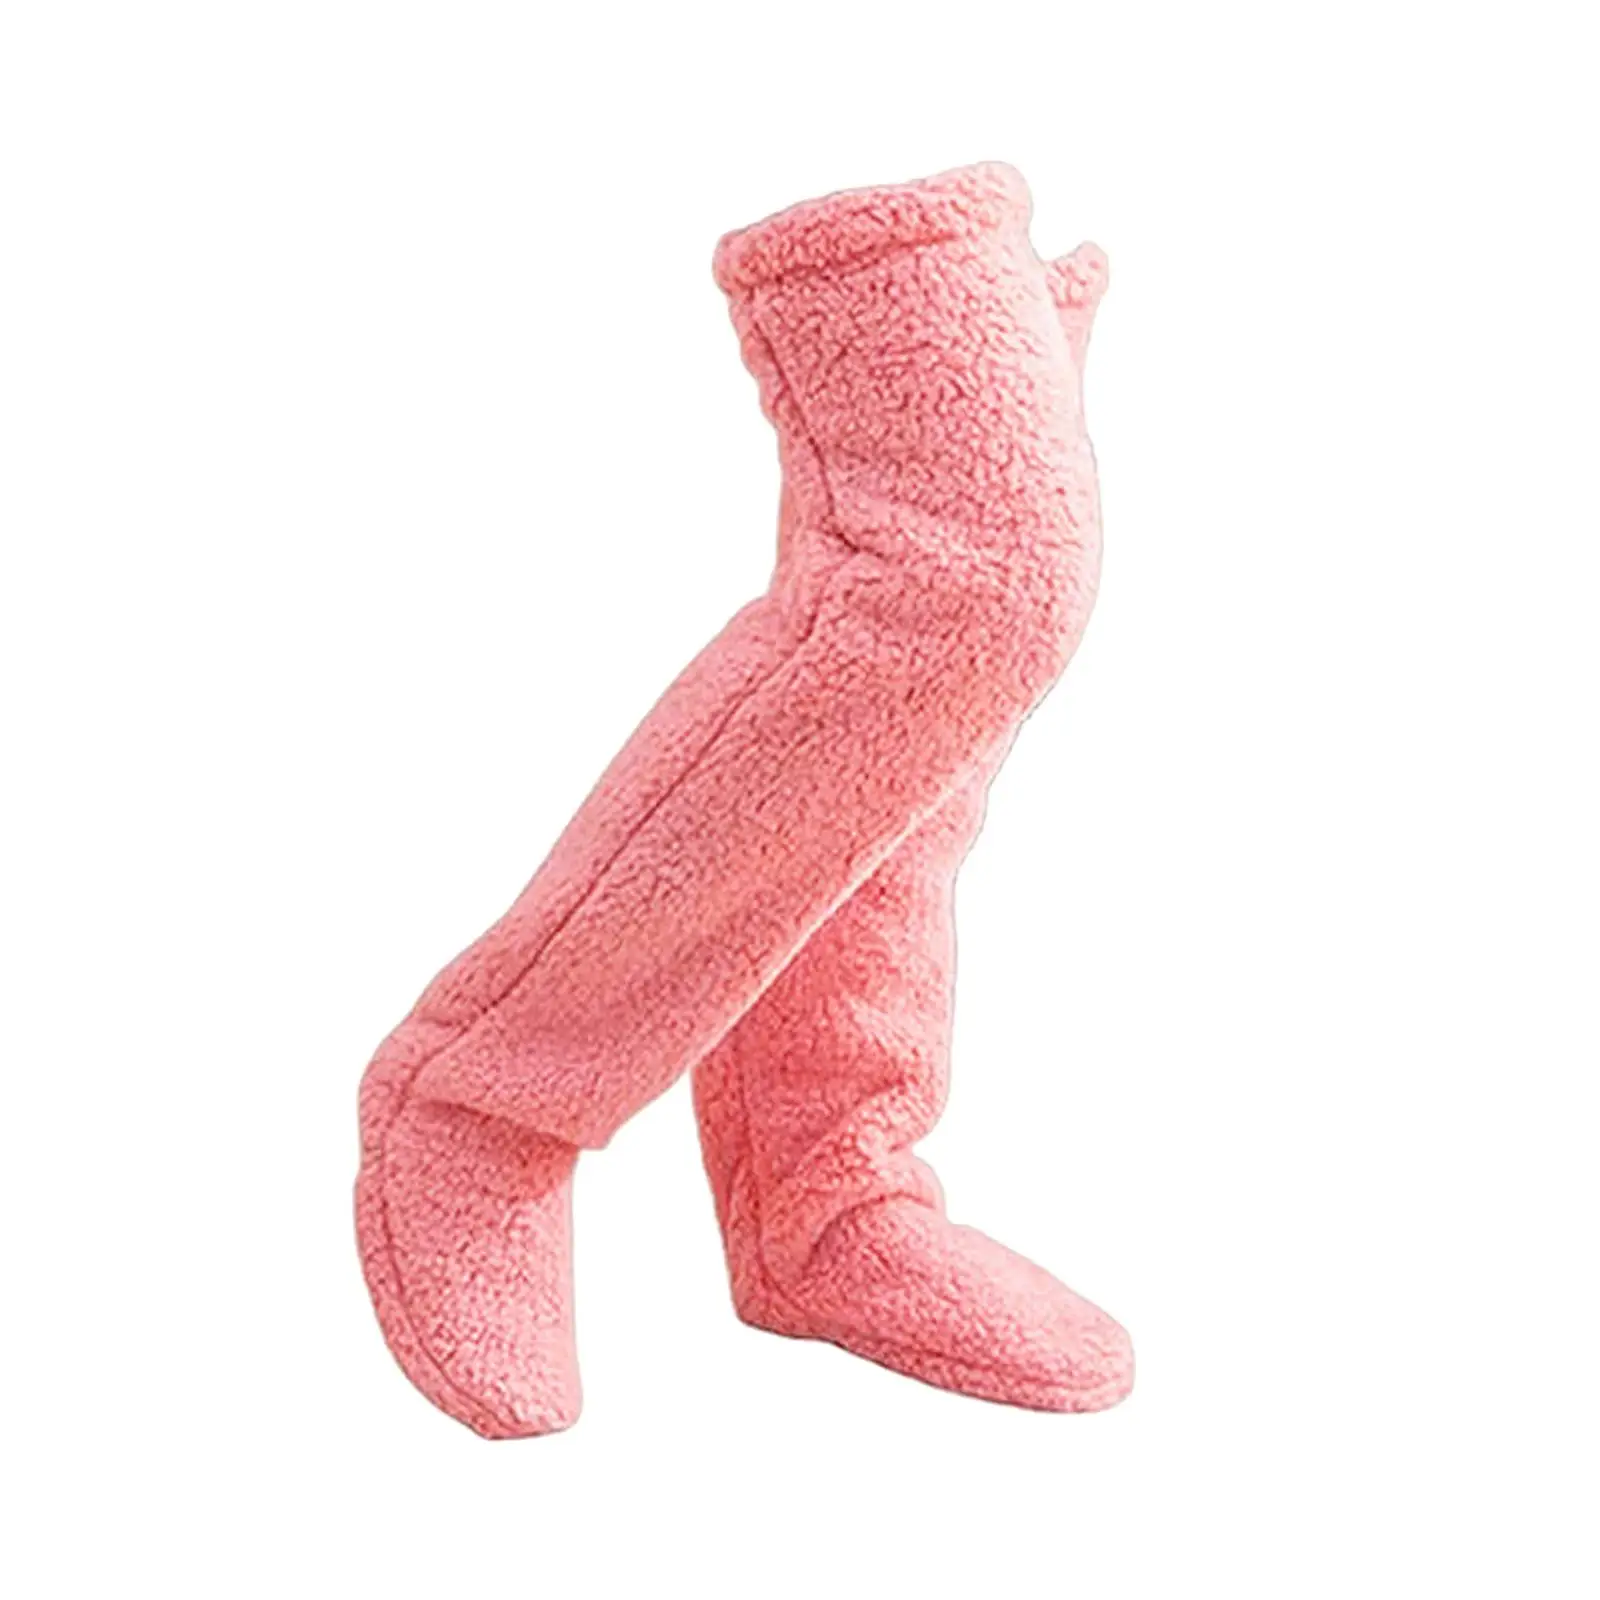 Plush Leg Warmers, Thigh High Socks Long Boot Stockings, Soft Slipper Stockings, Over Knee Fuzzy Socks for Dorm Living Room